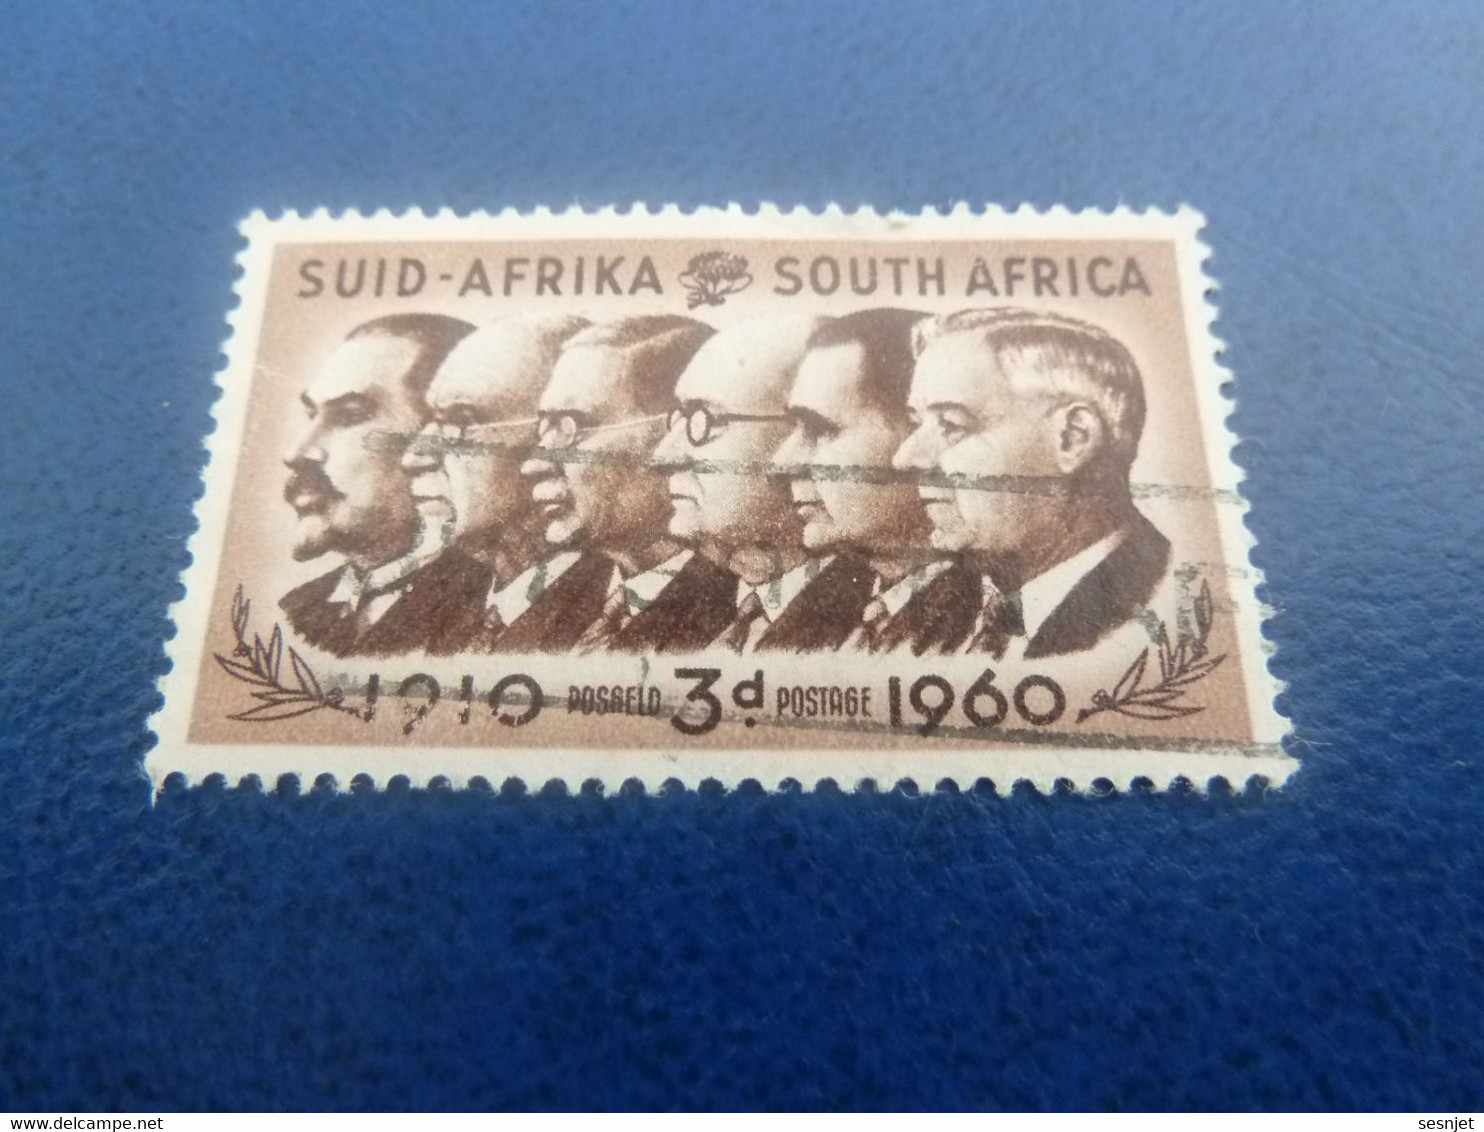 Suid-Africa - South Africa - Célébrités - 3 D. - Postage - Brun Et Brun Foncé - Oblitéré - Année 1960 - - Oblitérés